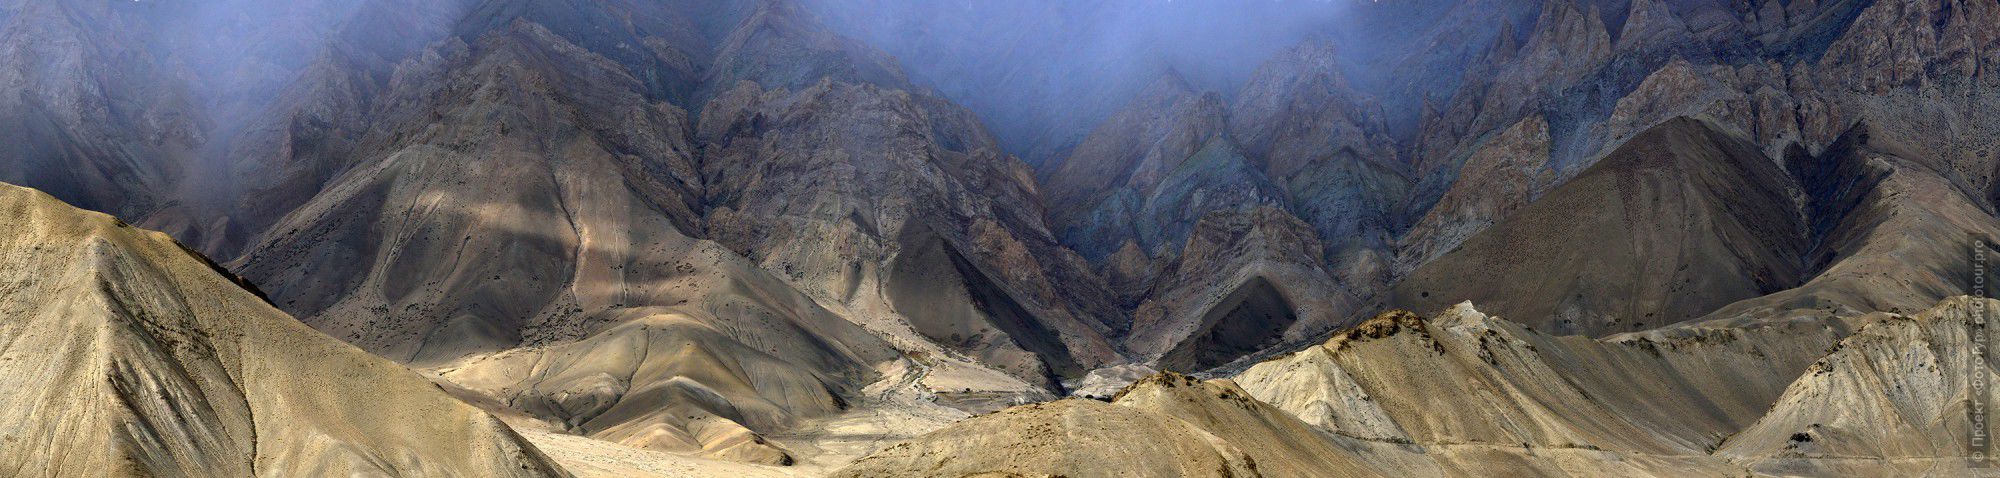 Фотография утренних туманов верховьях долины Ламаюру (фрагмент), Ладакх. Тур по Северной Индии.